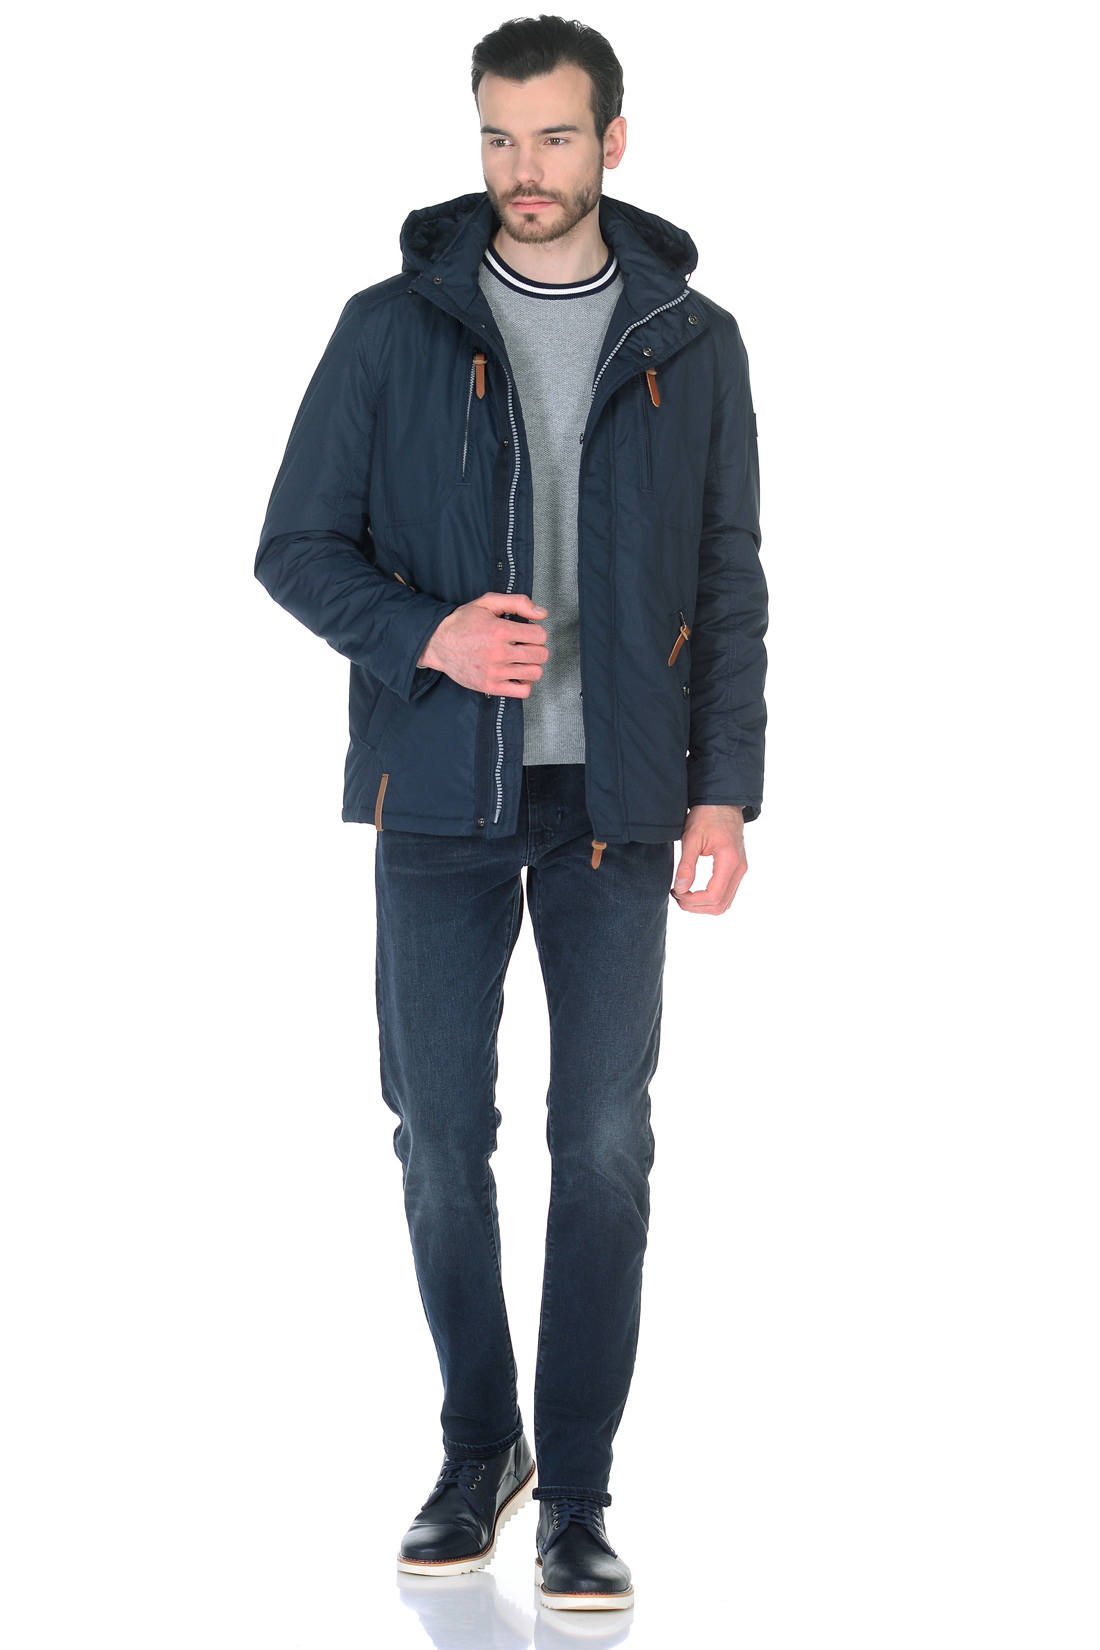 Куртка с отделкой из кожи (арт. baon B538022), размер S, цвет синий Куртка с отделкой из кожи (арт. baon B538022) - фото 6